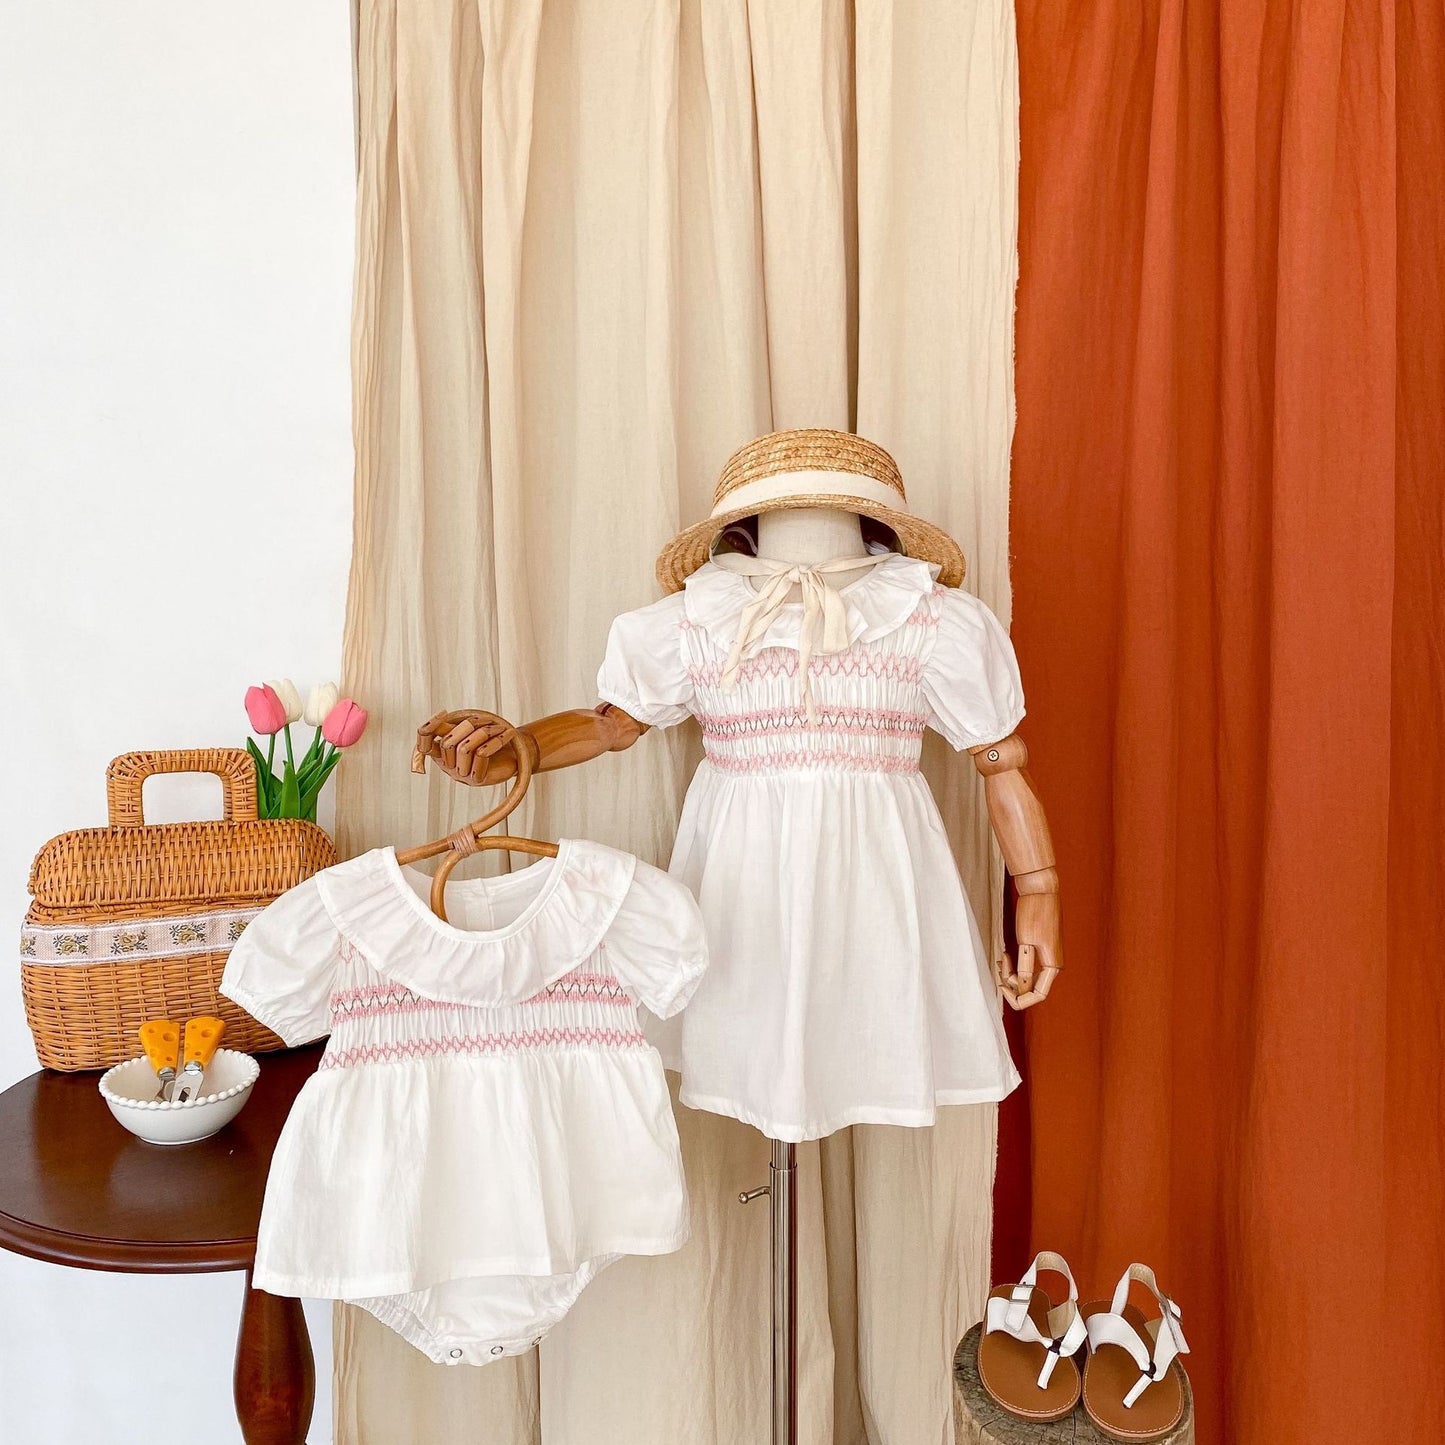 Summer Girls Ruffle Collar Onesies And Girls’ Dress – Princess Sister Matching Set